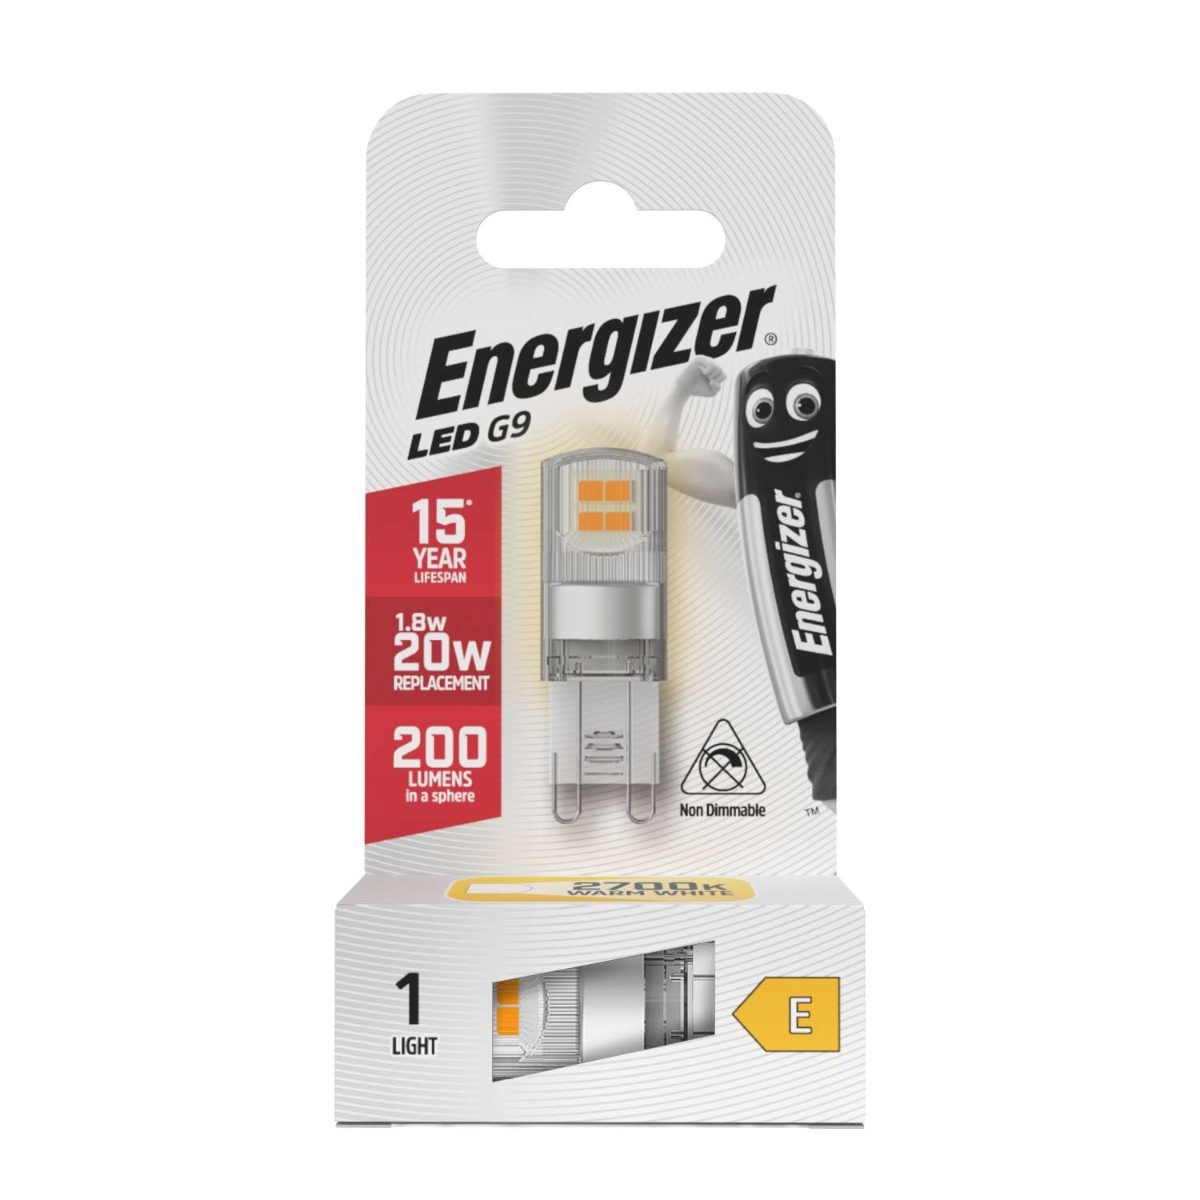 Energizer LED G9 200lm 1.8W 2,700K (Warm White), Box of 1